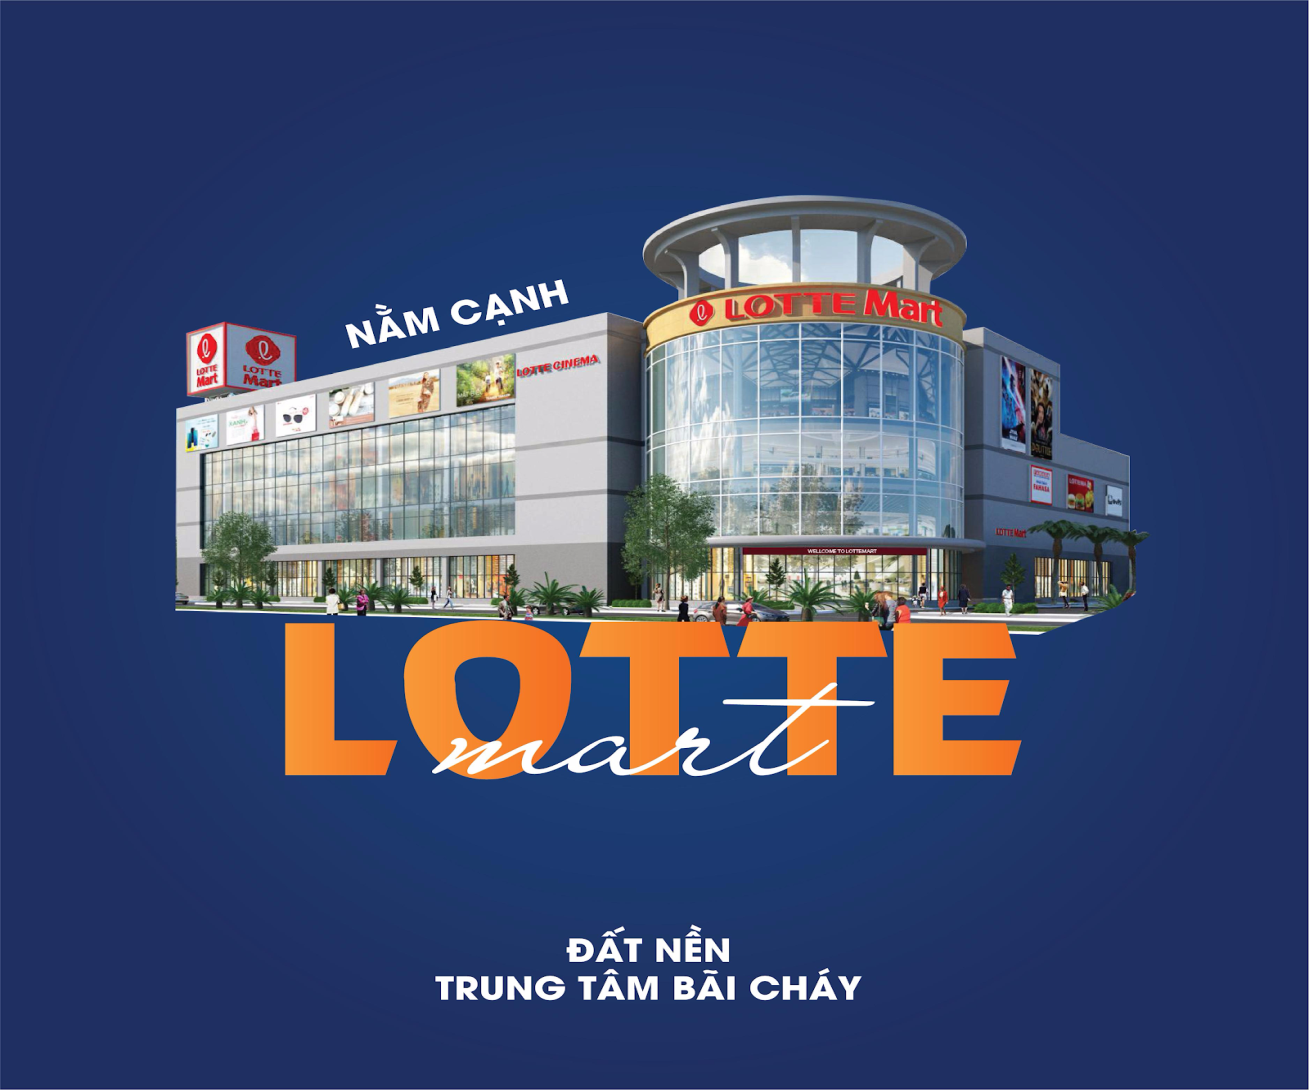 Dự án nằm cạnh LOTTE Mart Hạ Long, có tiềm năng tăng giá mạnh.